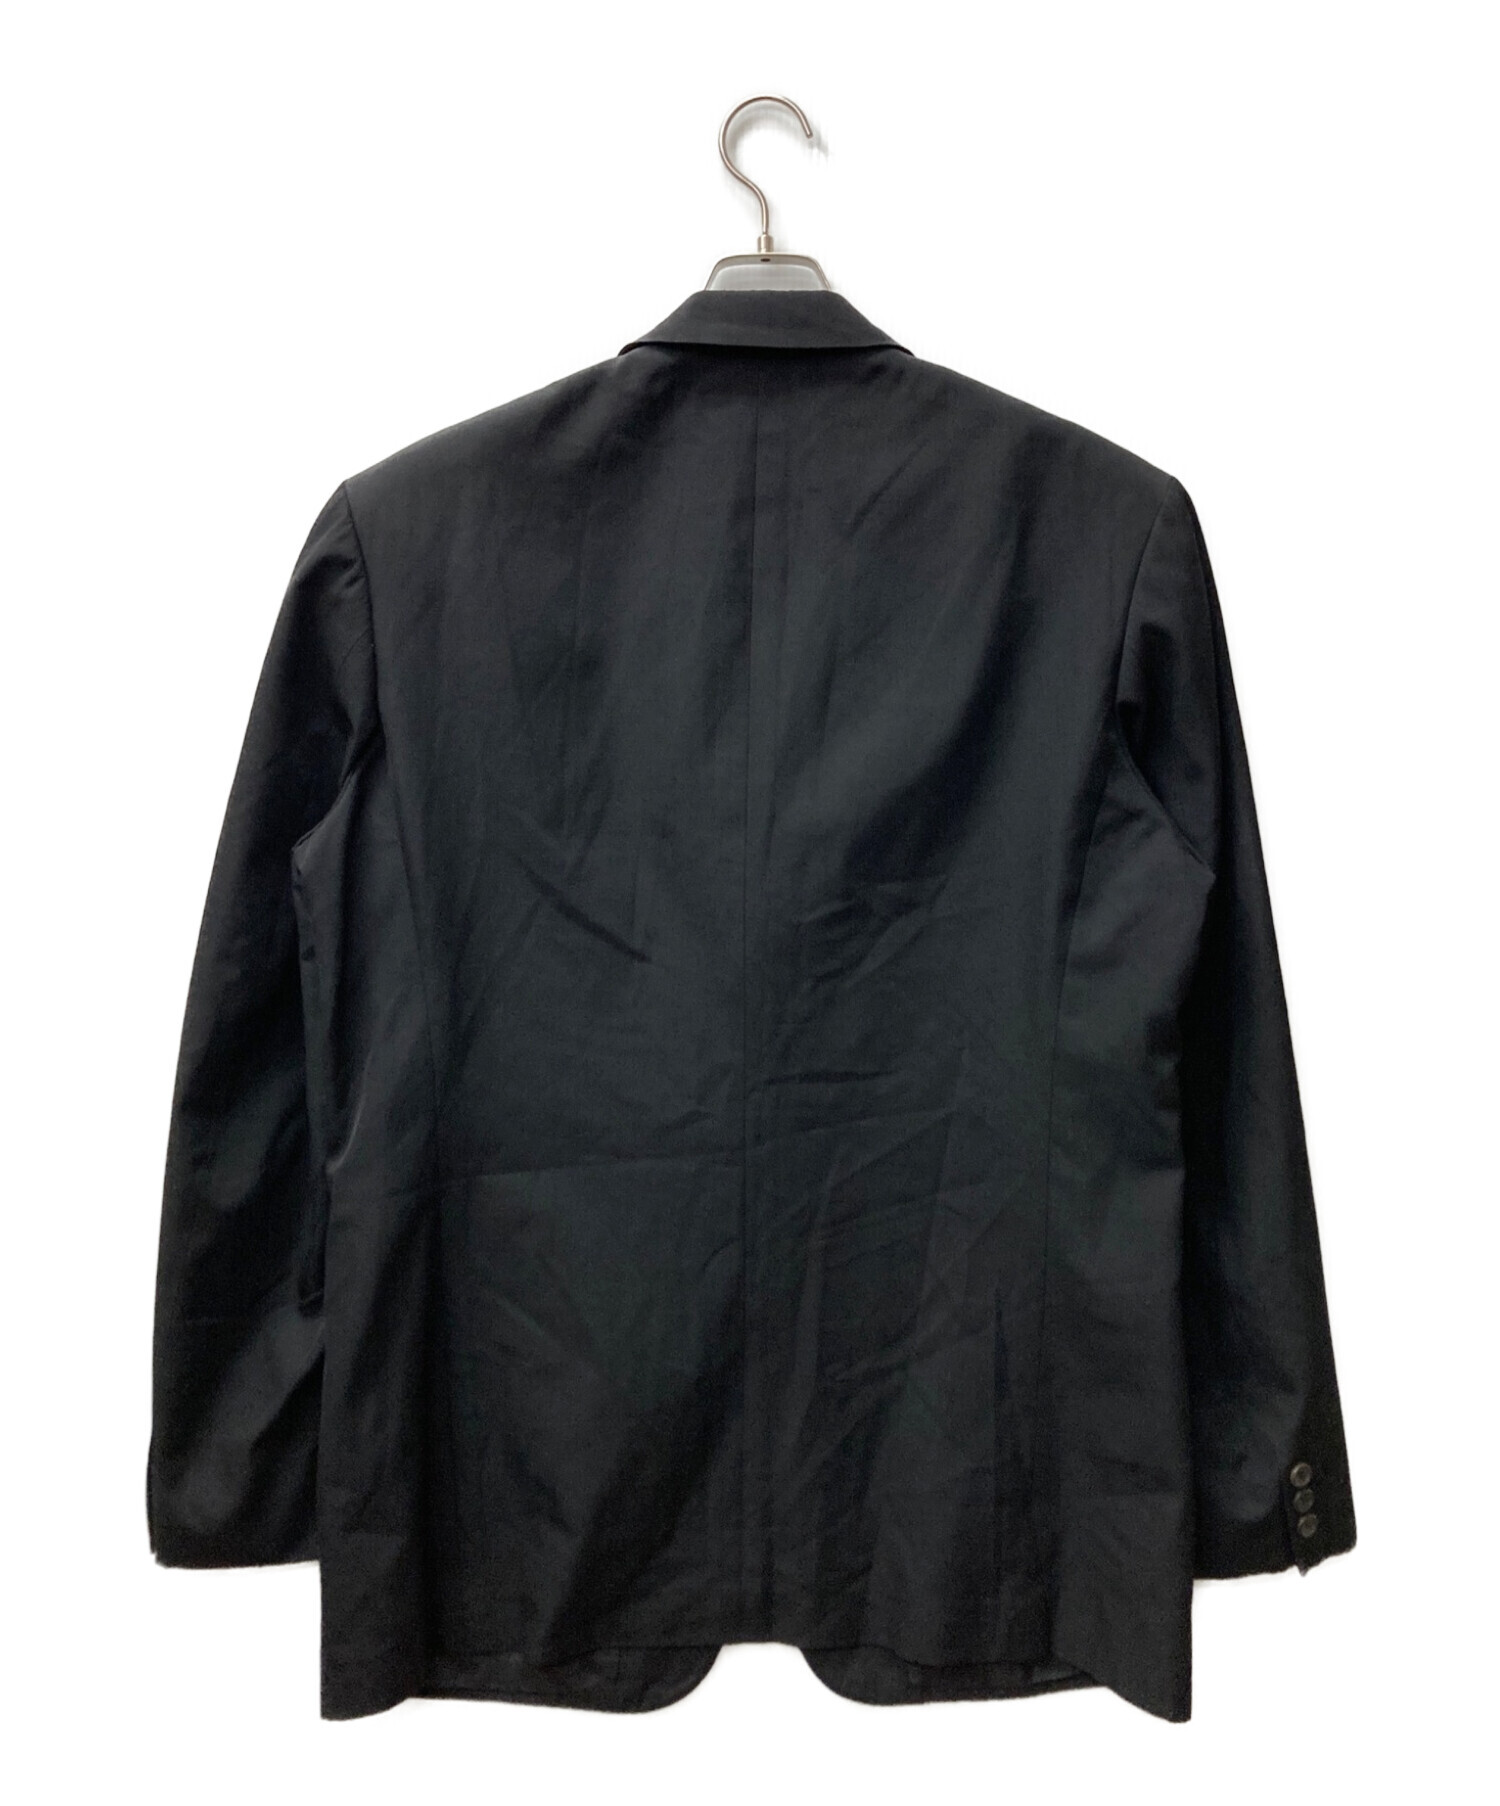 日本の職人技 14AW Yohji Yamamoto 3B テーラードジャケット ブラック ...